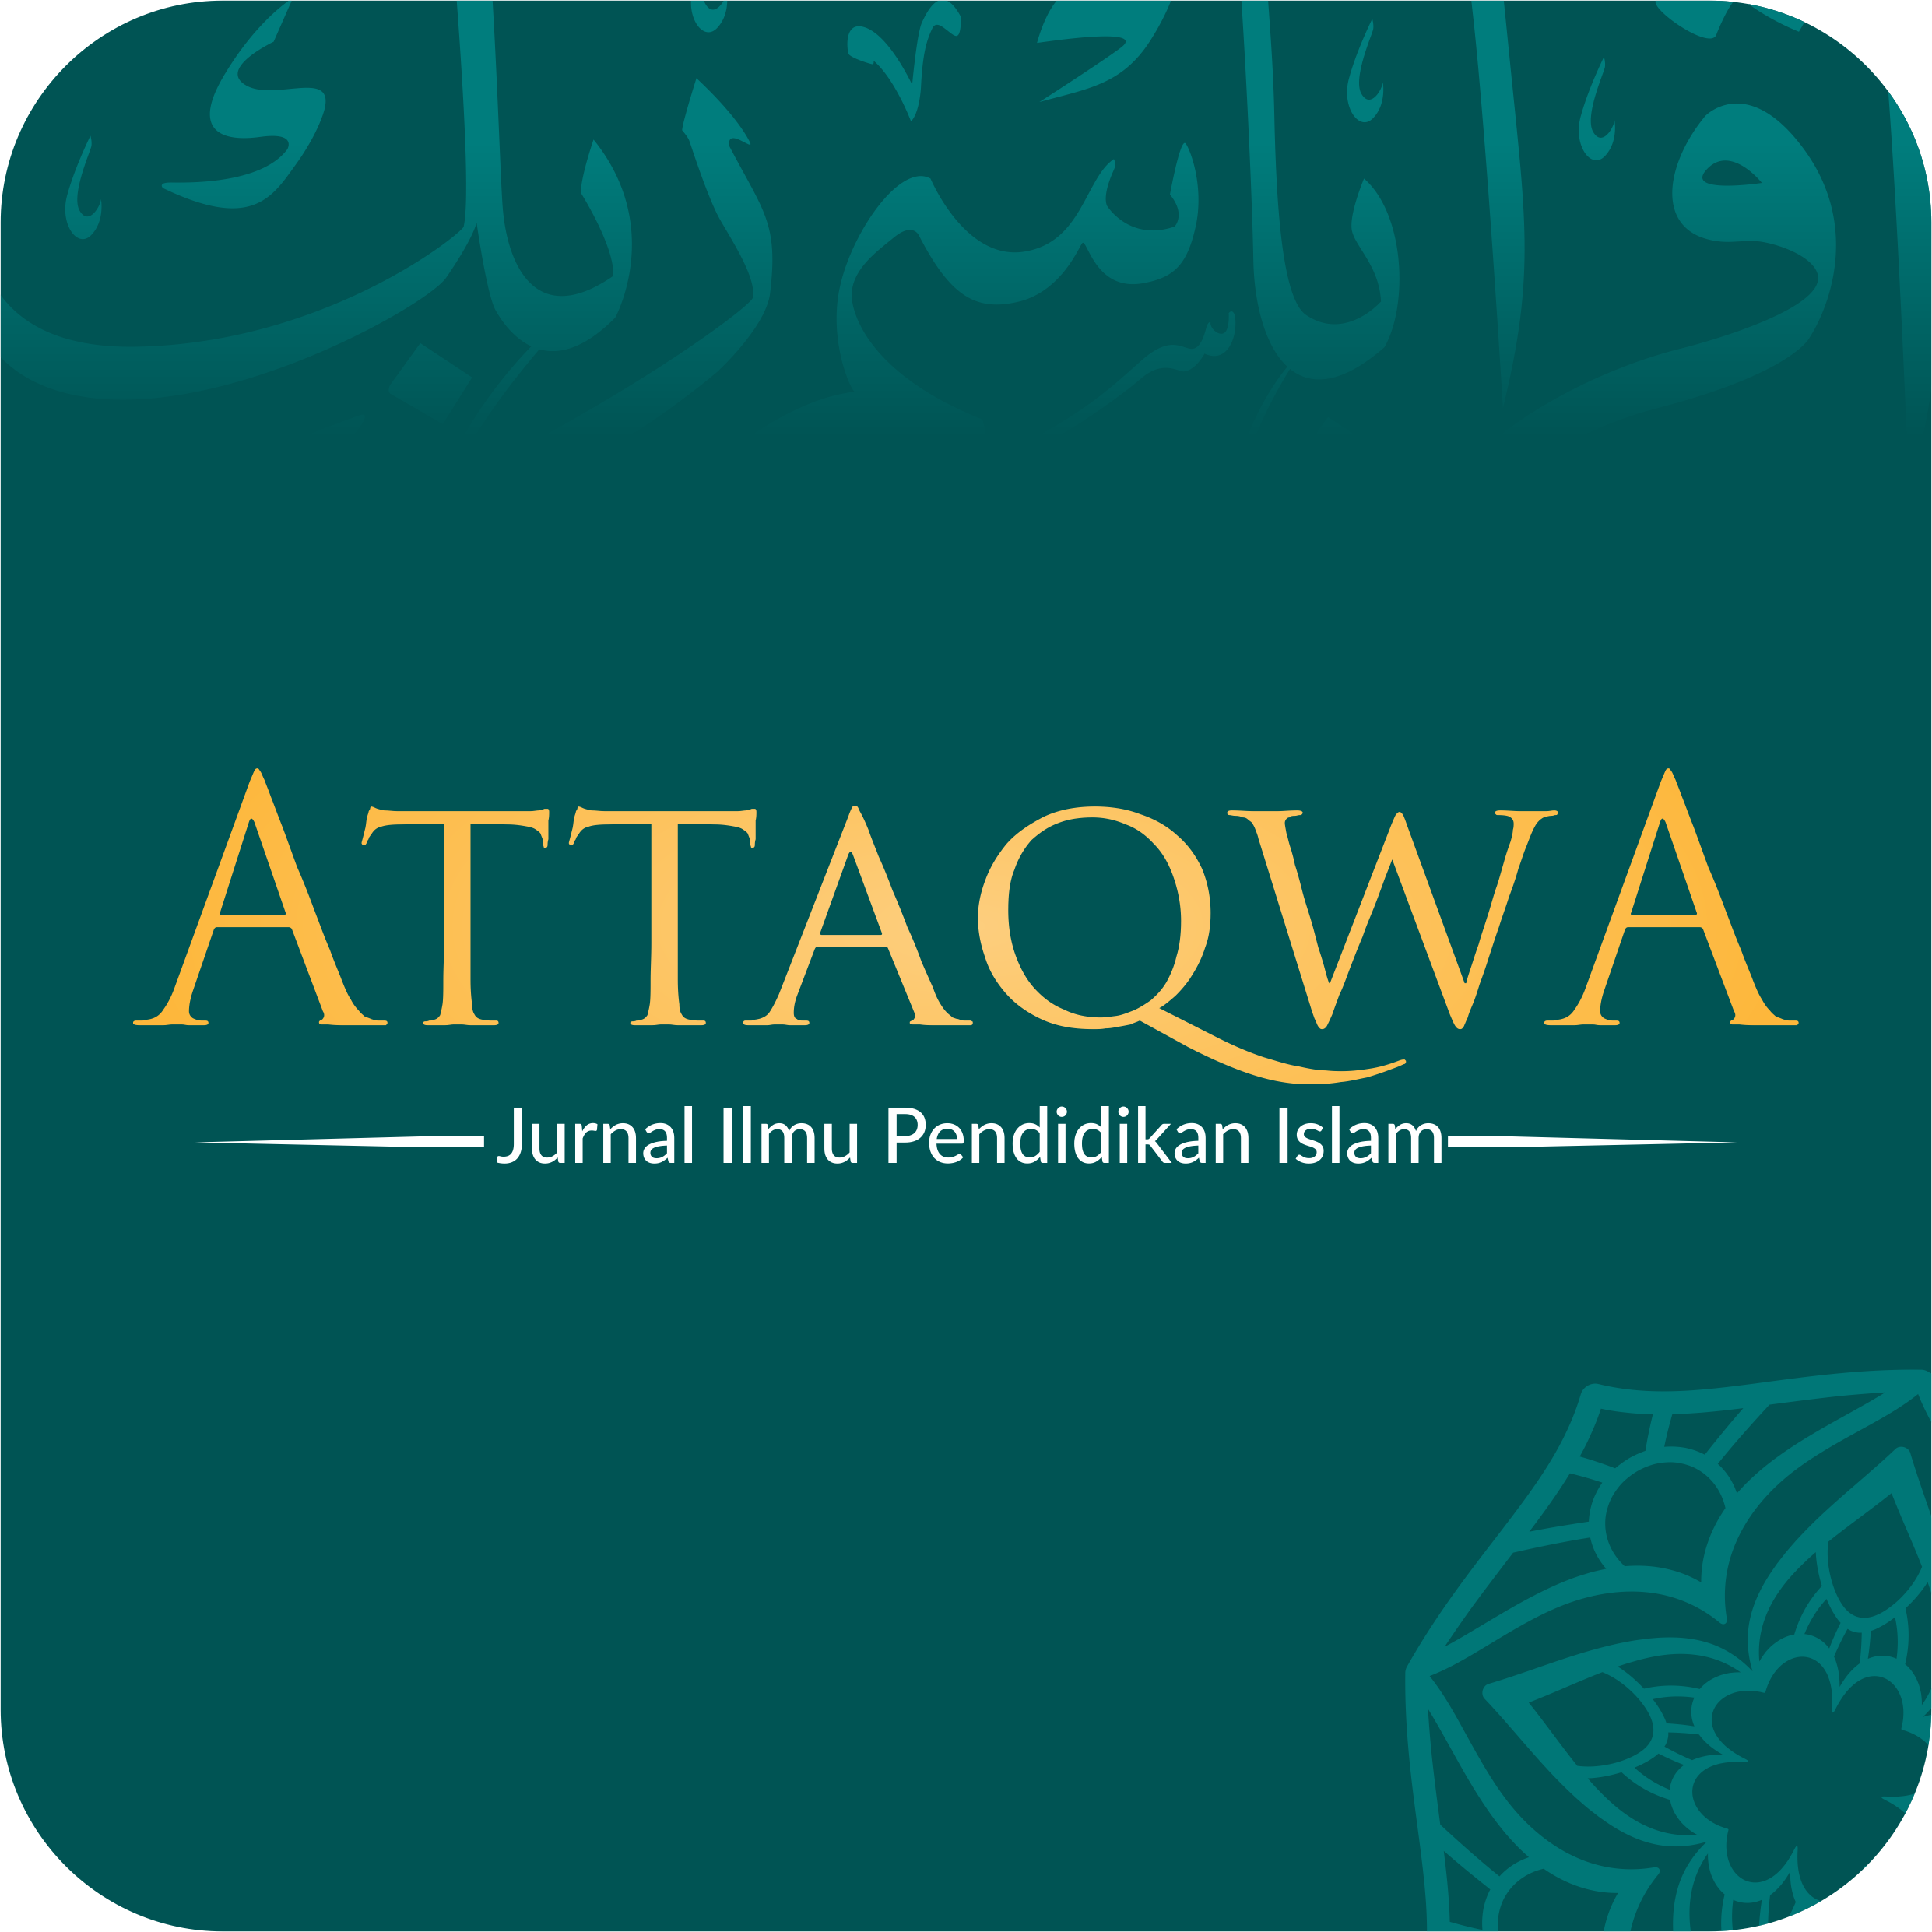 Attaqwa: Jurnal Ilmu Pendidikan Islam